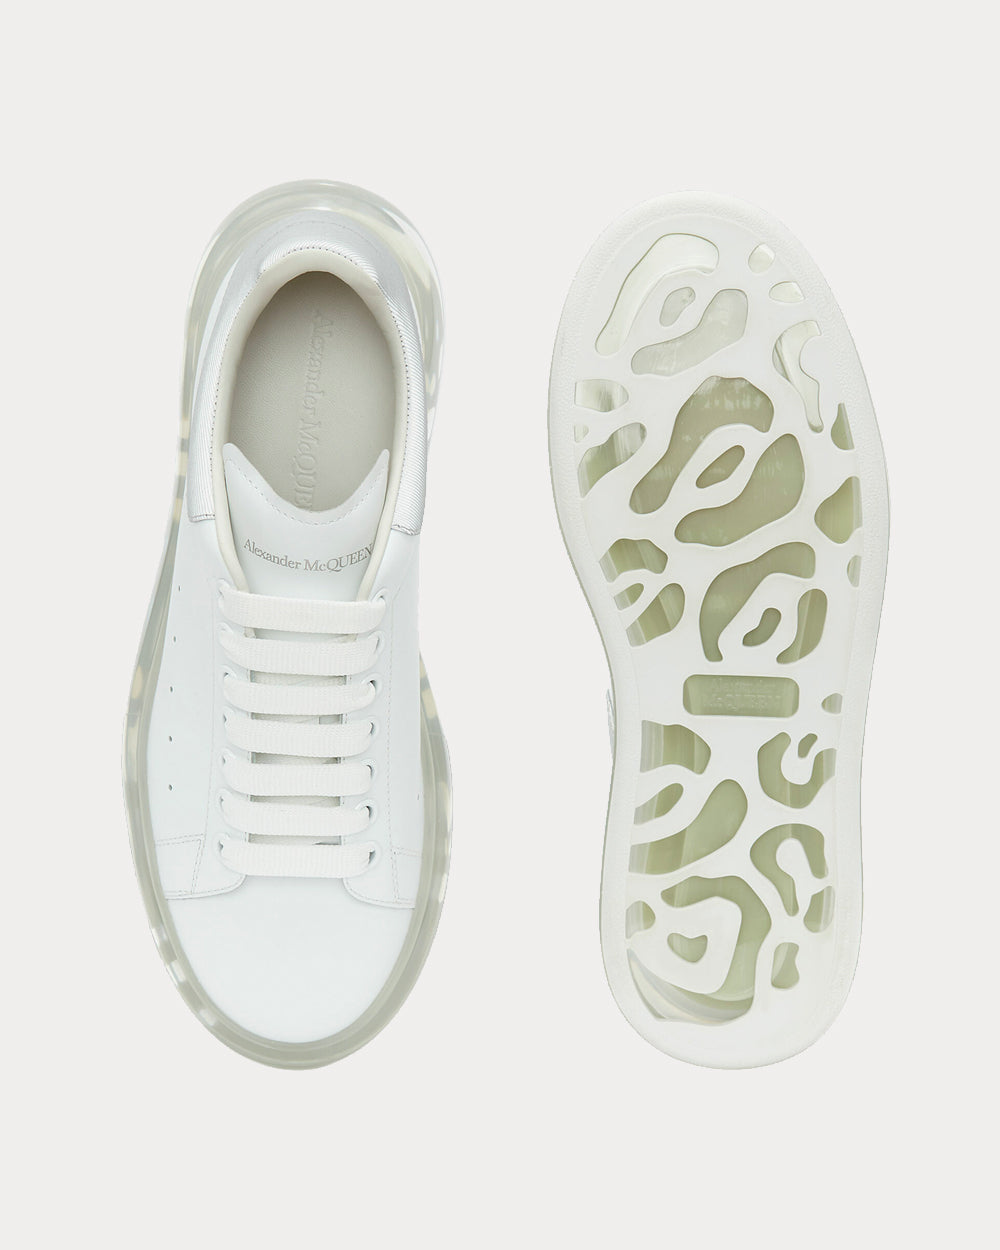 Alexander McQueen - Oversized White Low Top Sneakers